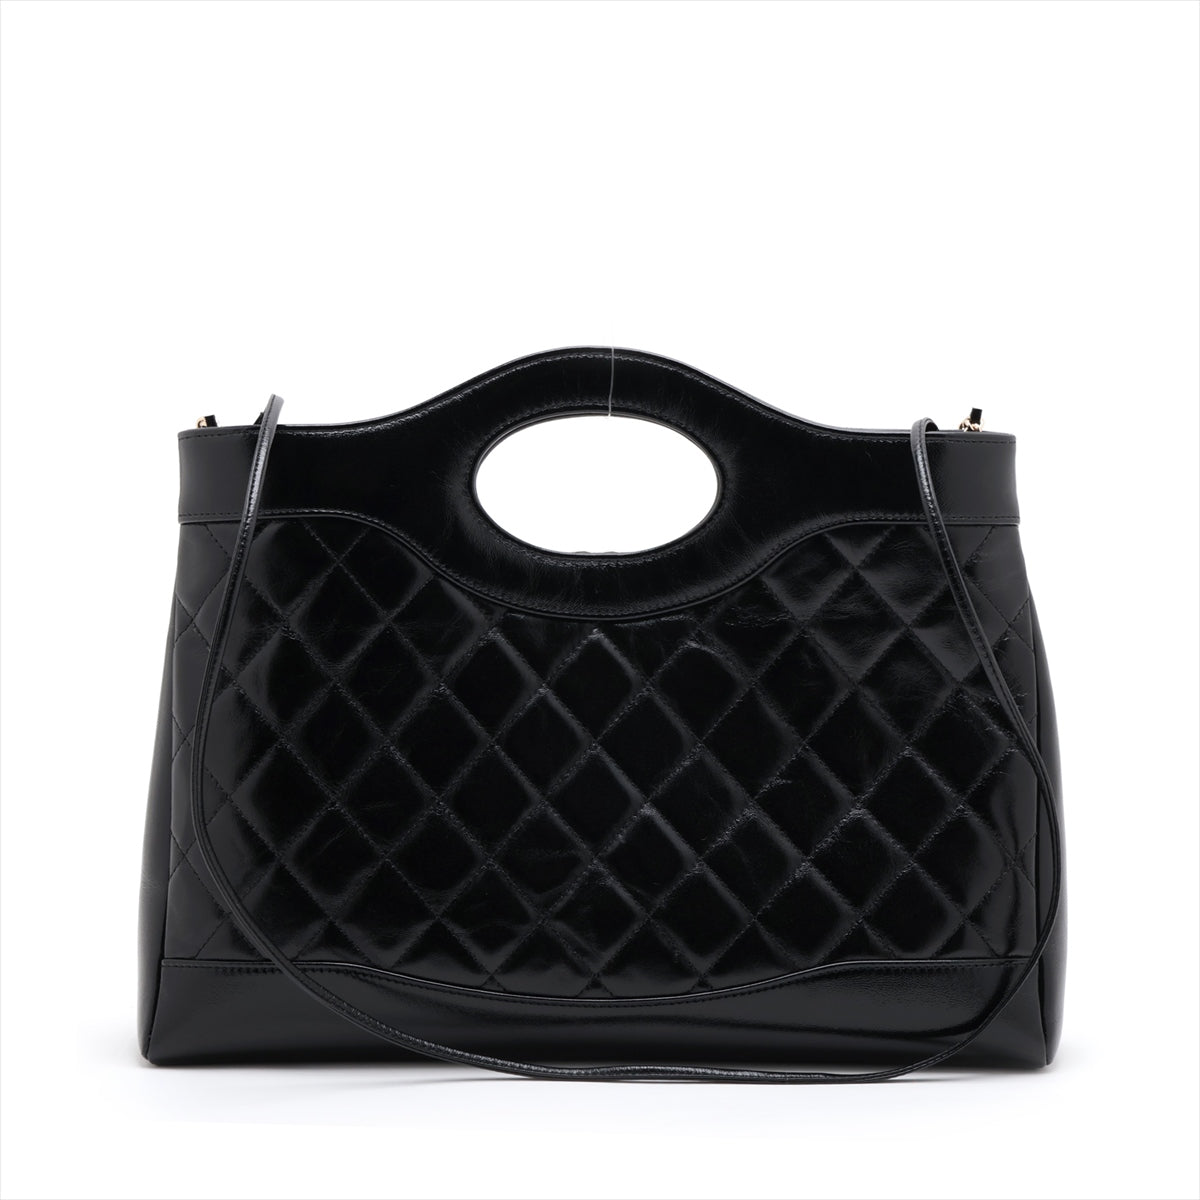 Chanel Matelasse Leather 2way shoulder bag Black Gold Metal fittings